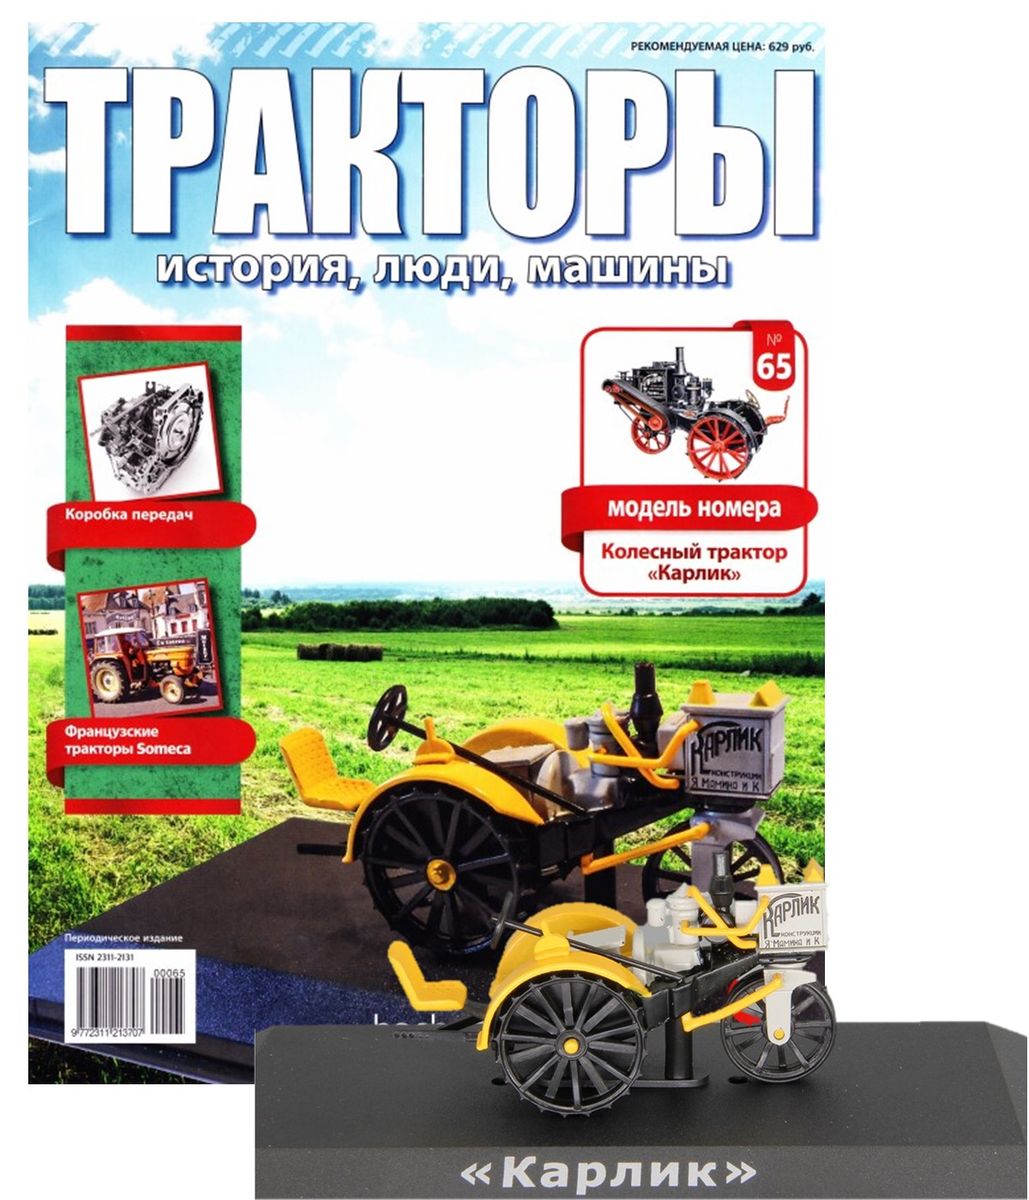 Журнал Тракторы №65. Трактор Колесной трактор Карлик